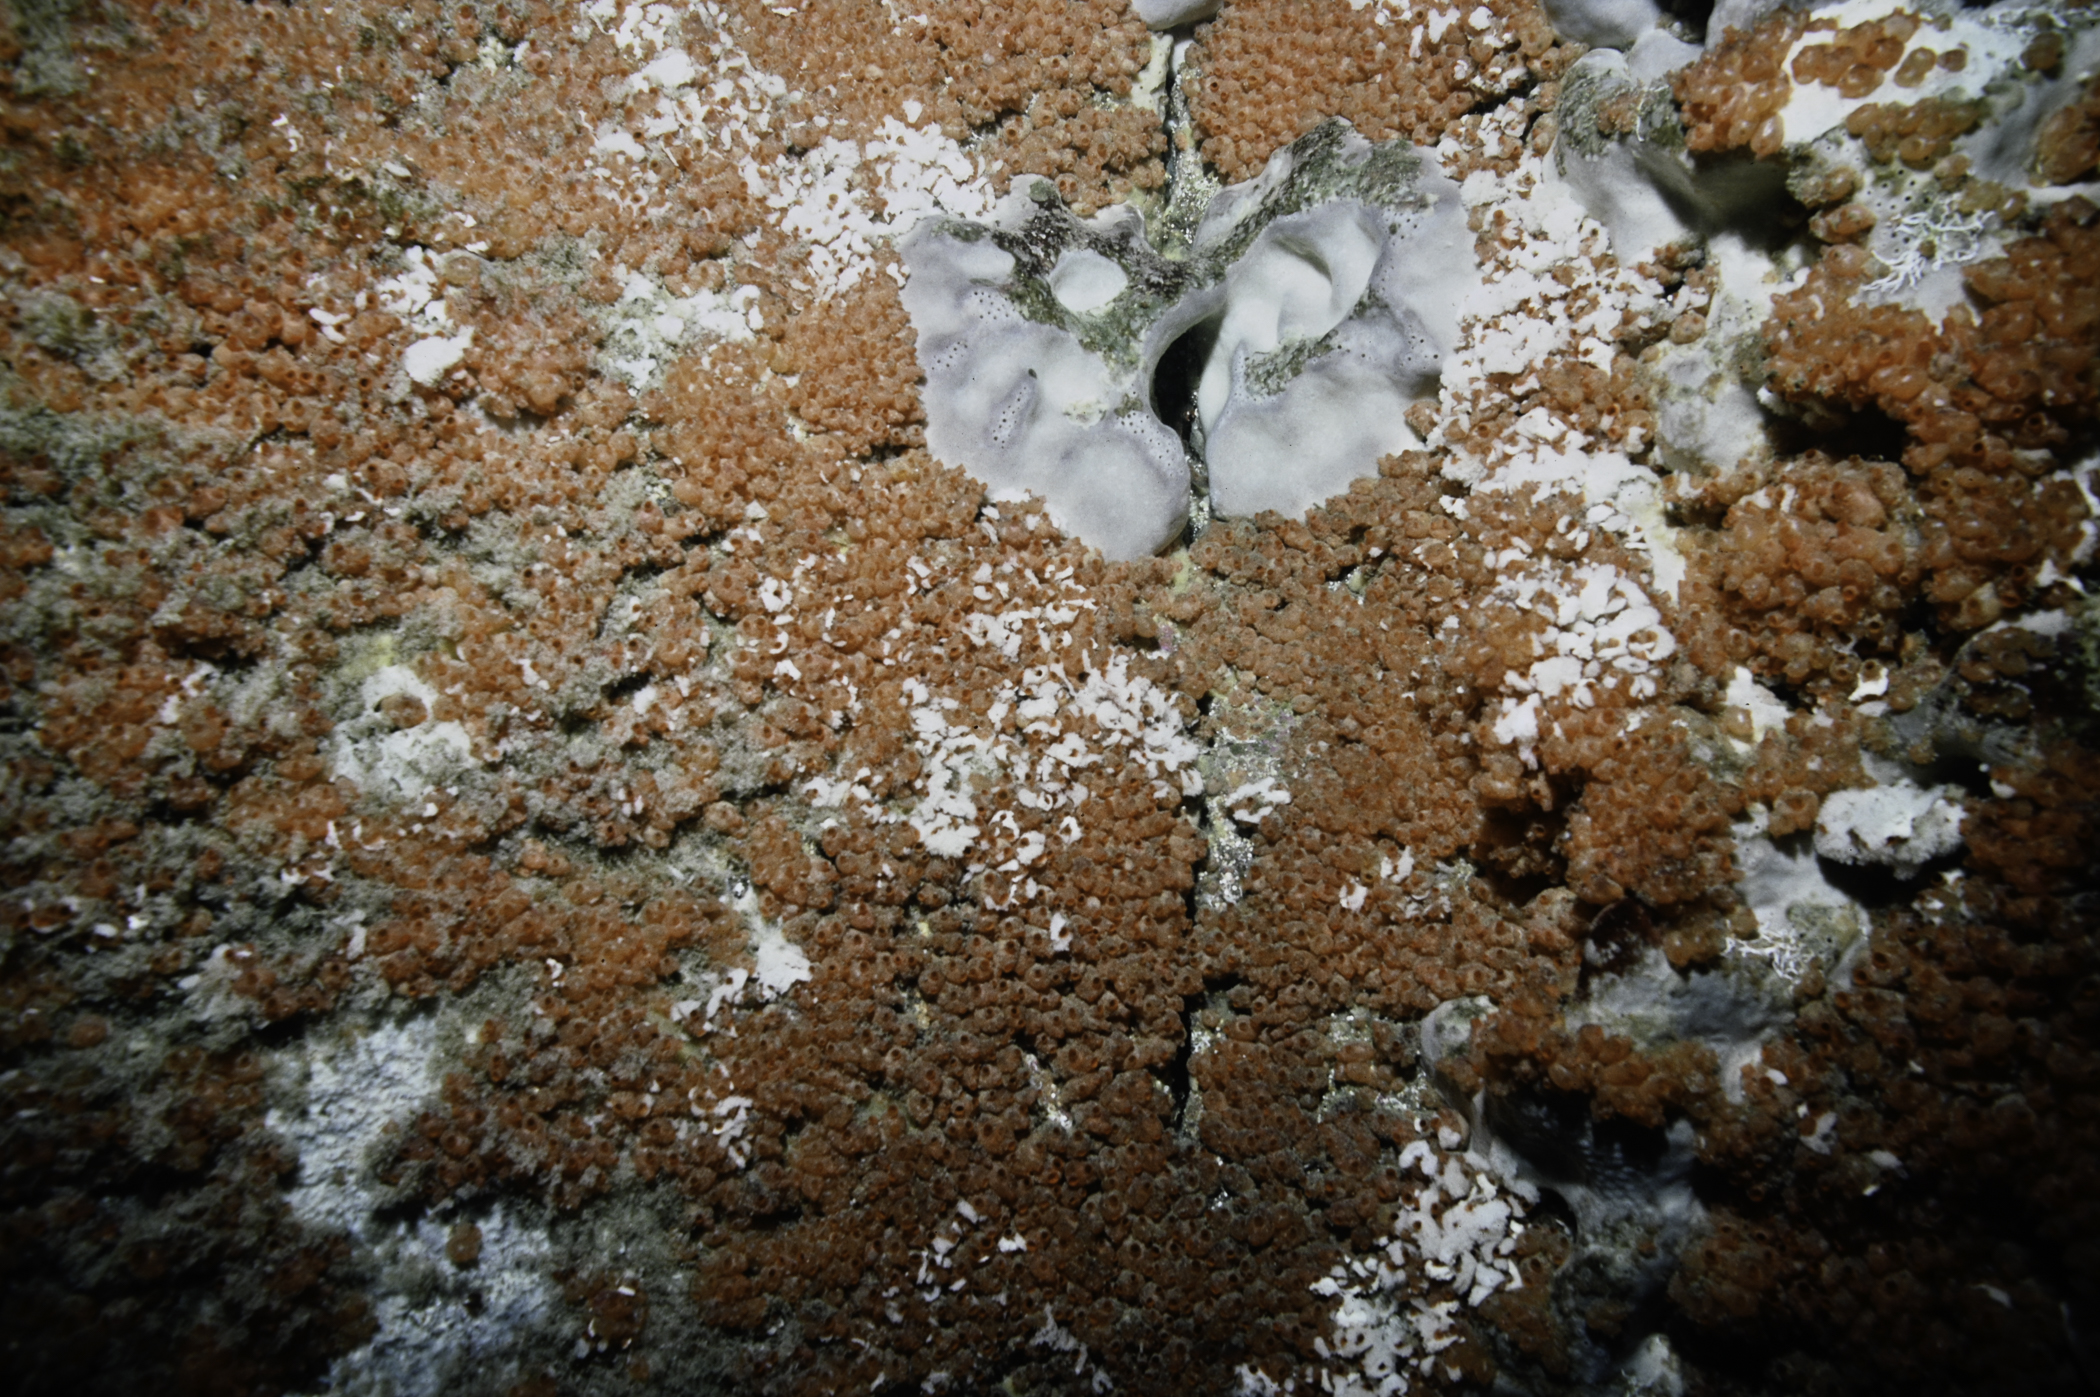 Pachymatisma johnstonia, Dendrodoa grossularia. Site: W of Farganlack Point, Rathlin Island. 